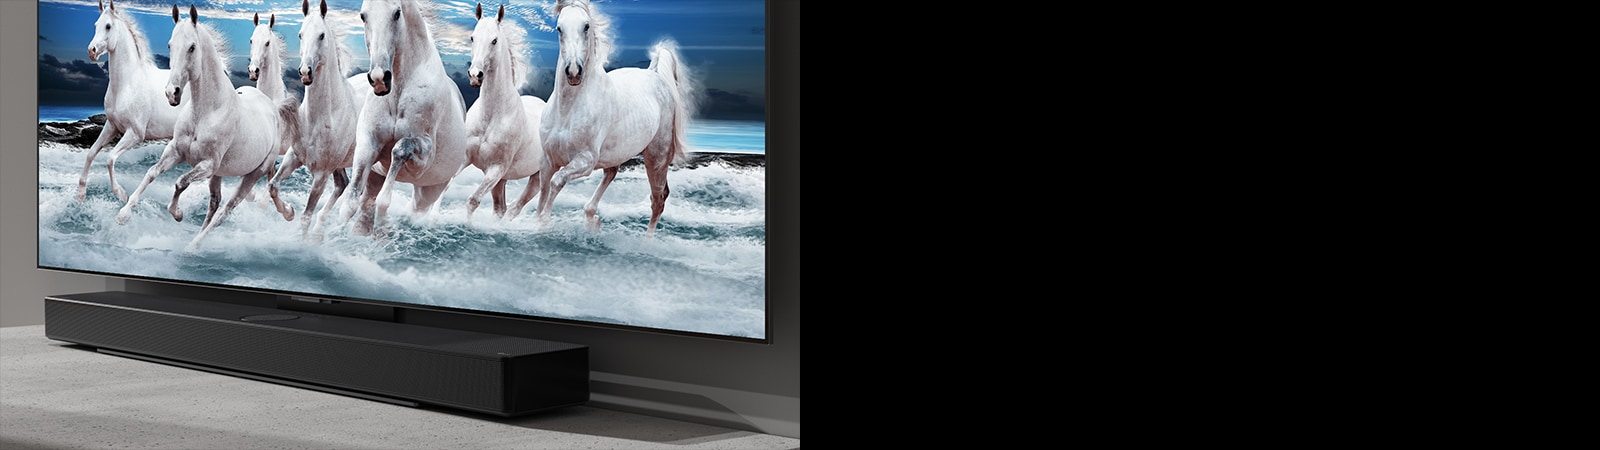 La barre de son et le téléviseur sont placés sur une table blanche. Le téléviseur affiche sept chevaux blancs au galop.